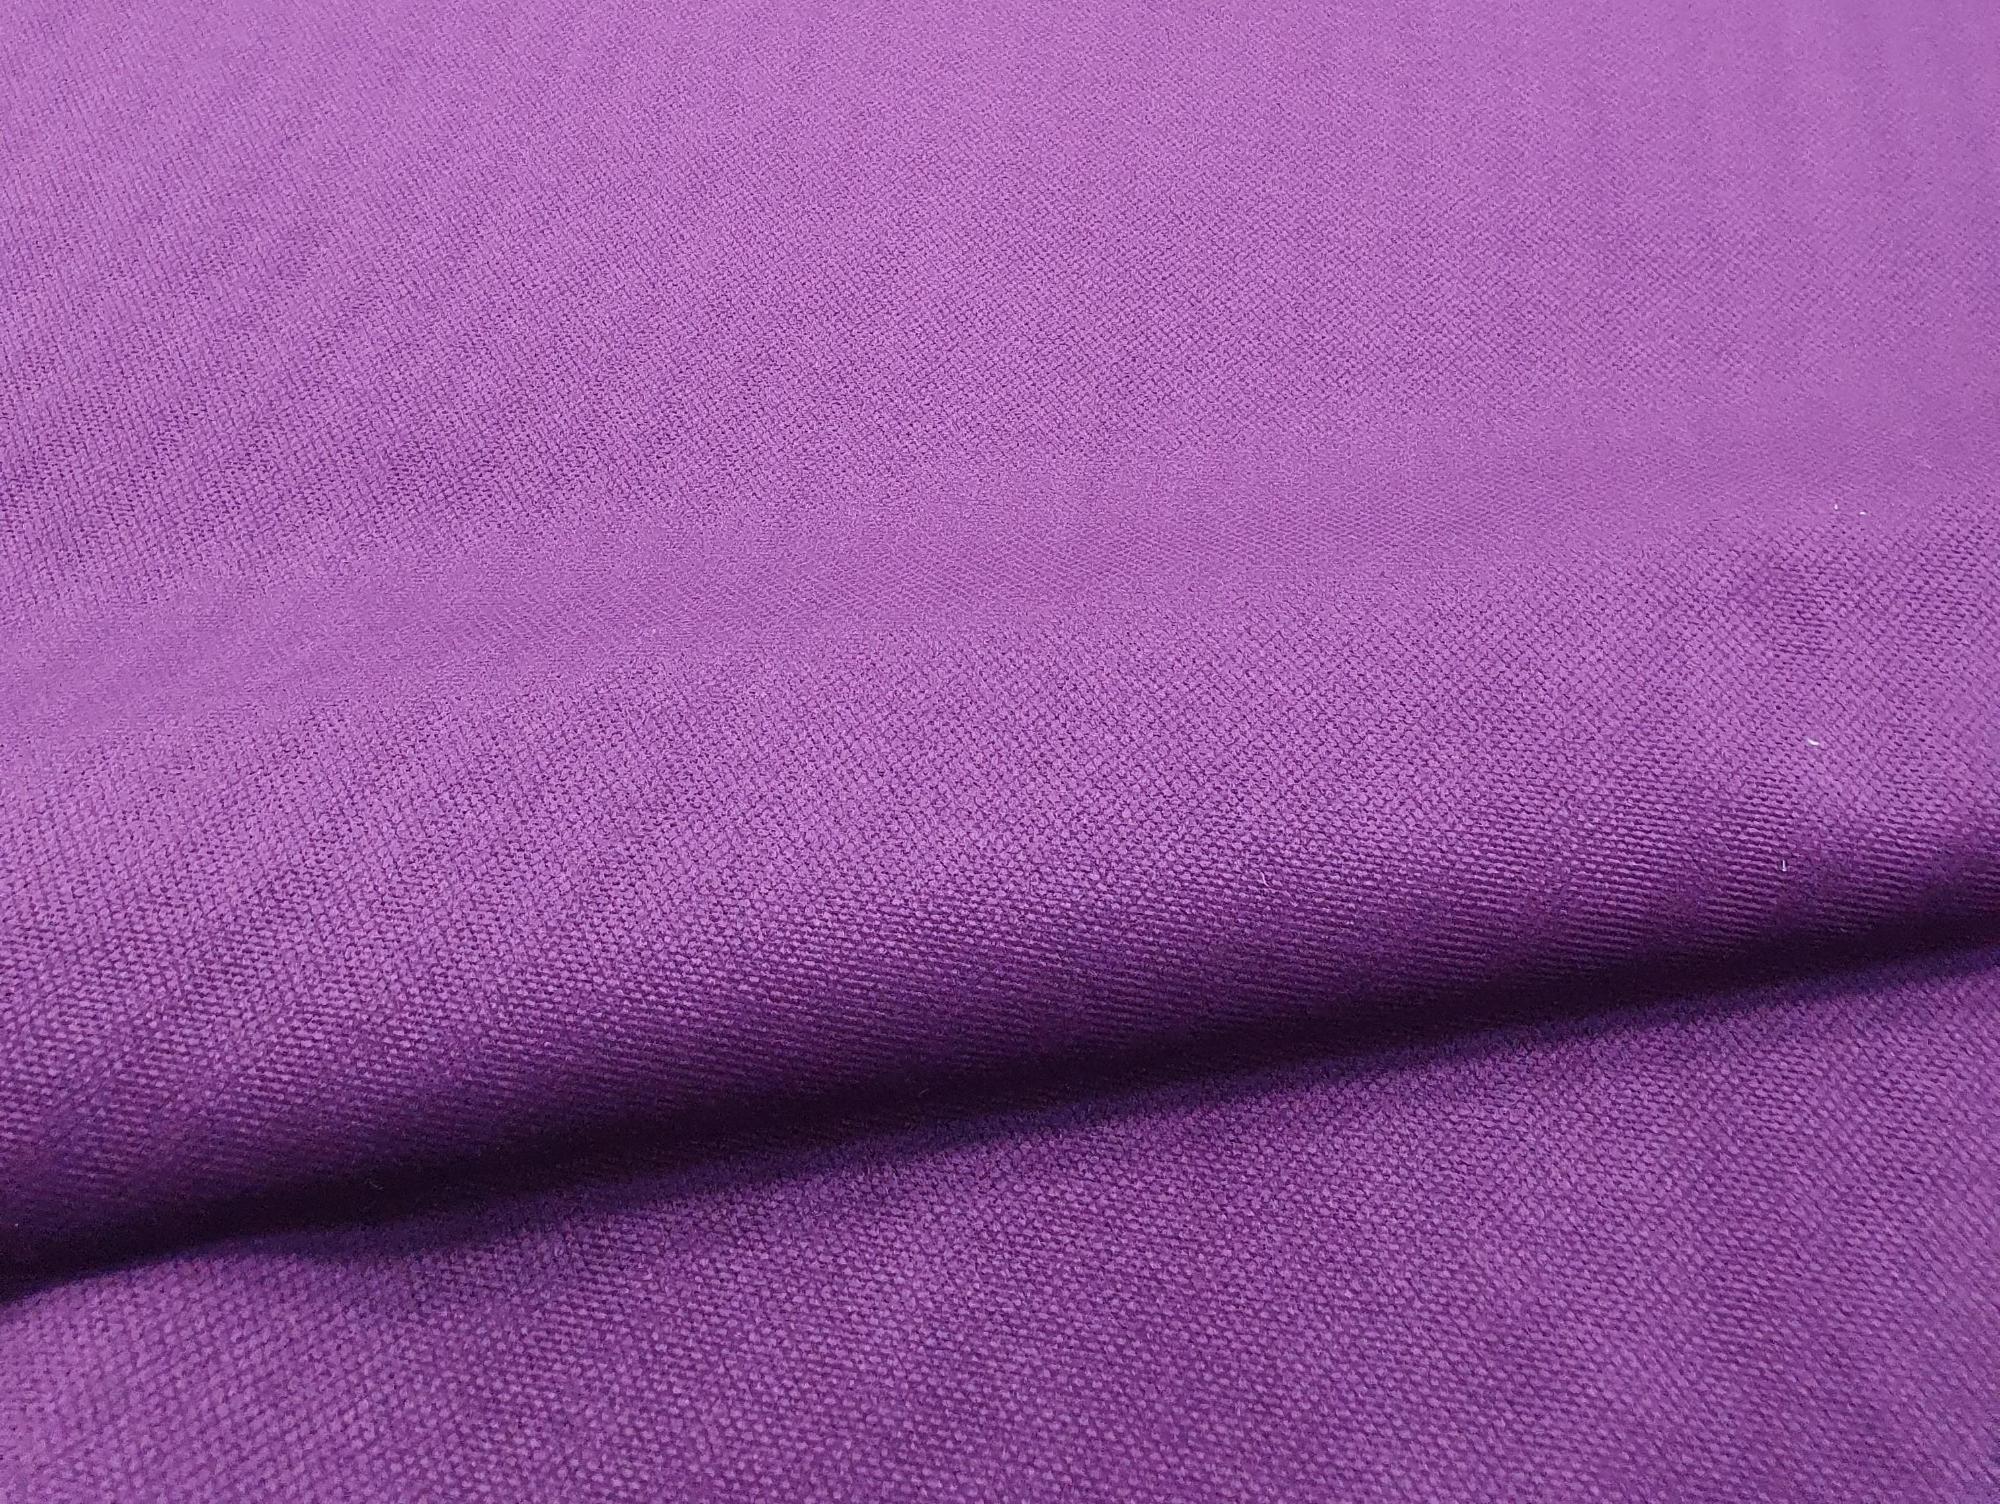 Кухонный прямой диван Метро (Фиолетовый\Черный)